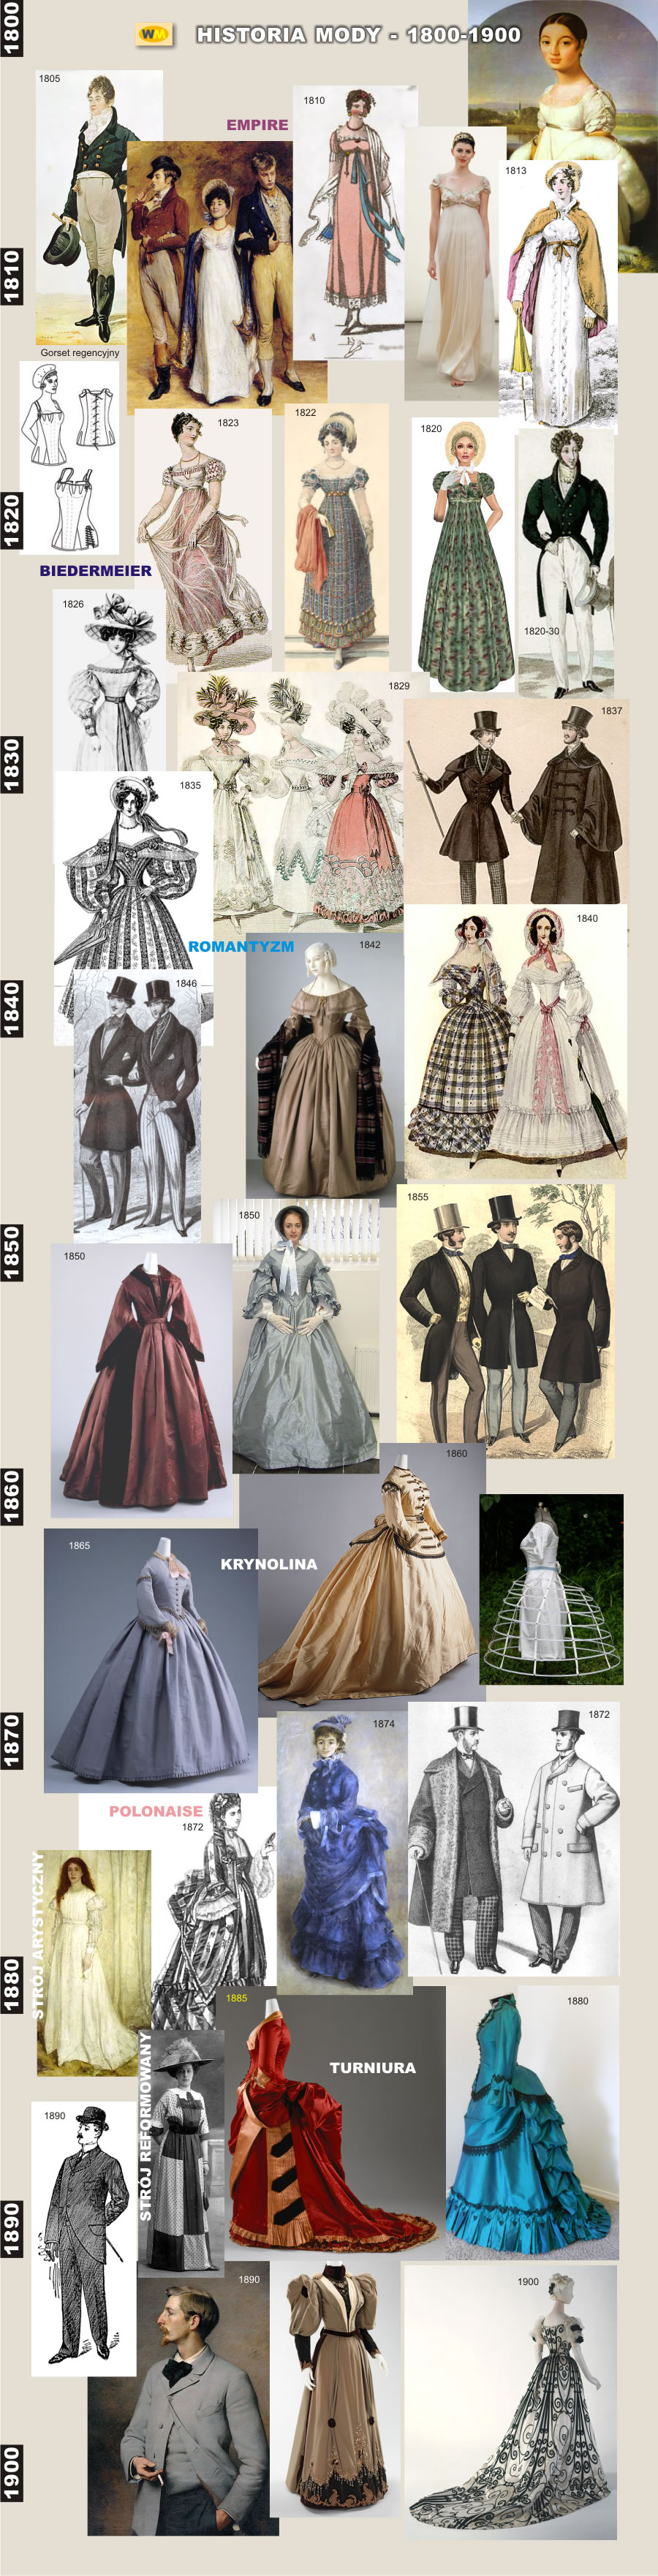 history fashion